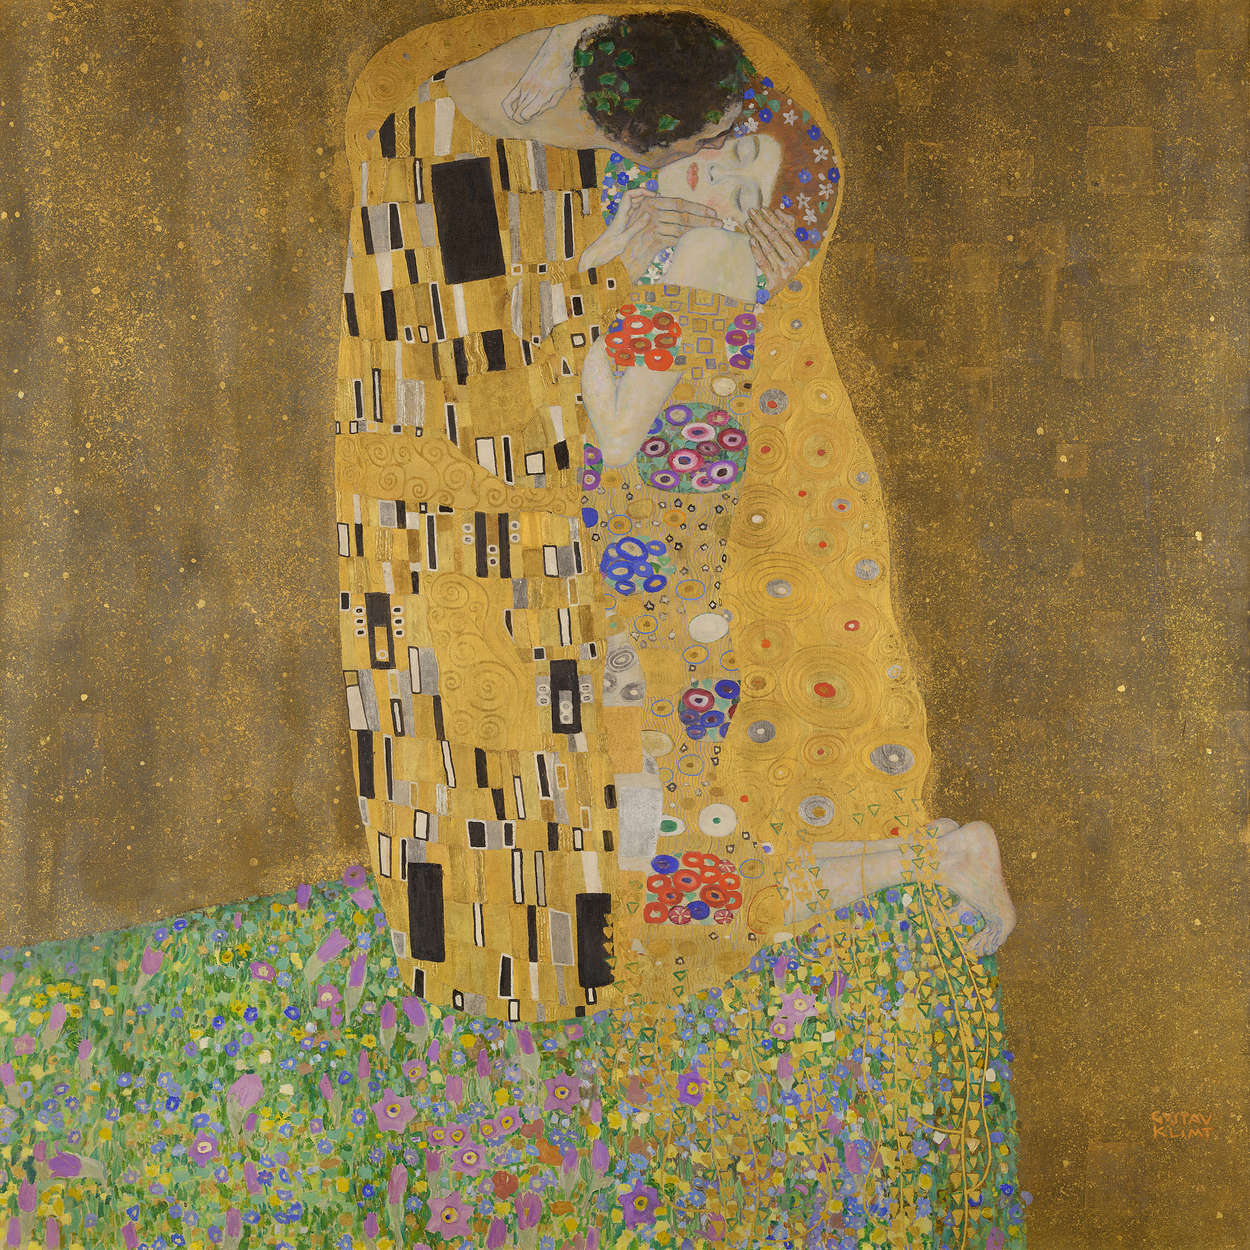             De Kus" muurschildering van Gustav Klimt
        